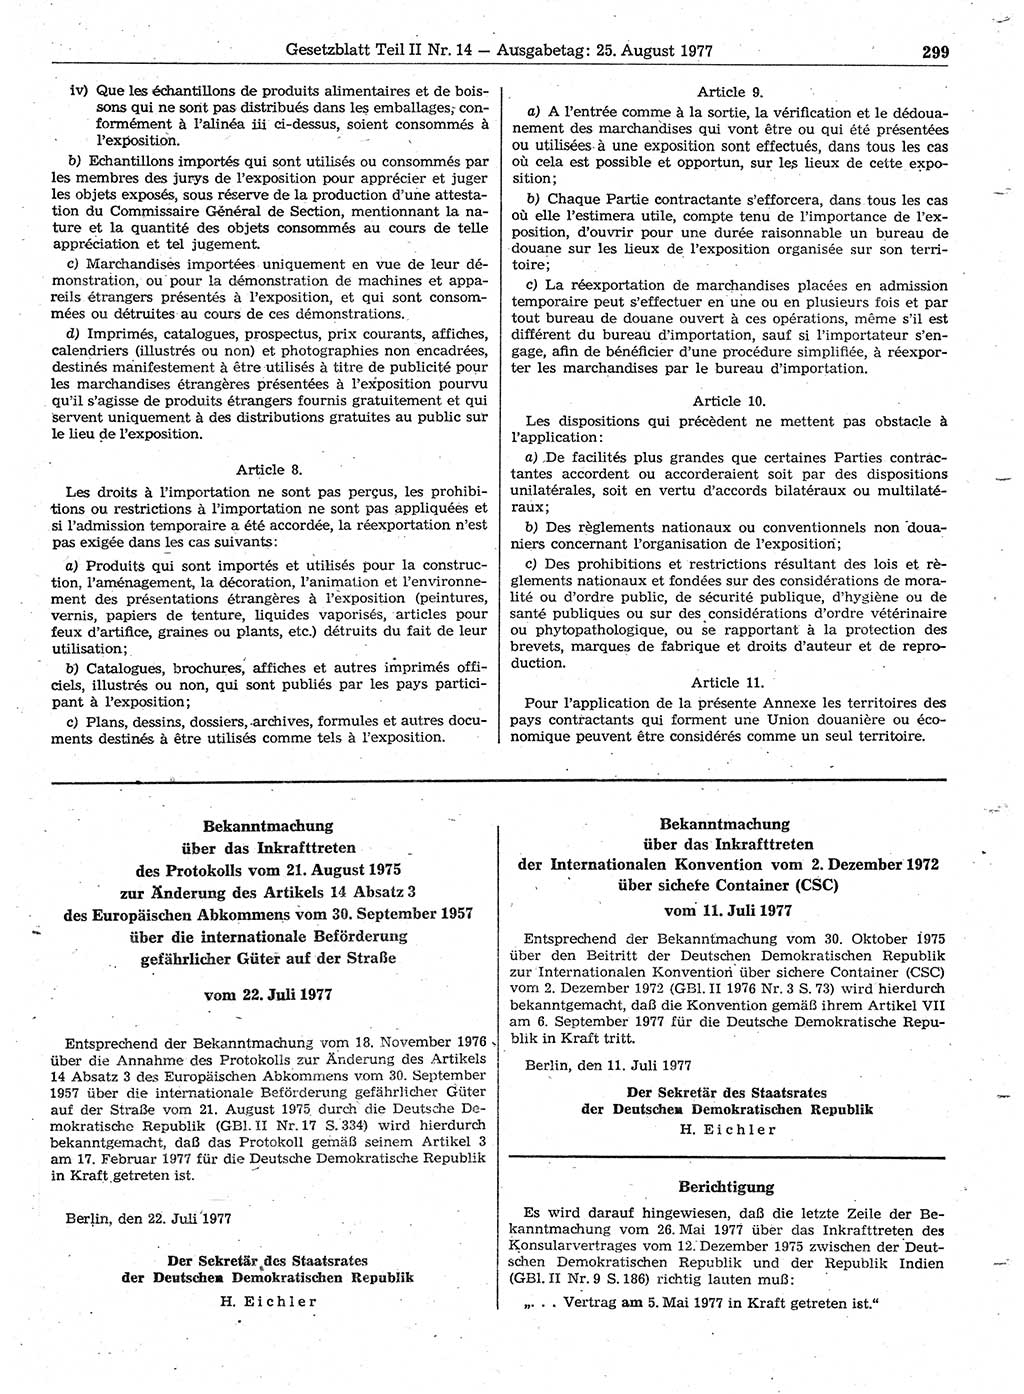 Gesetzblatt (GBl.) der Deutschen Demokratischen Republik (DDR) Teil ⅠⅠ 1977, Seite 299 (GBl. DDR ⅠⅠ 1977, S. 299)